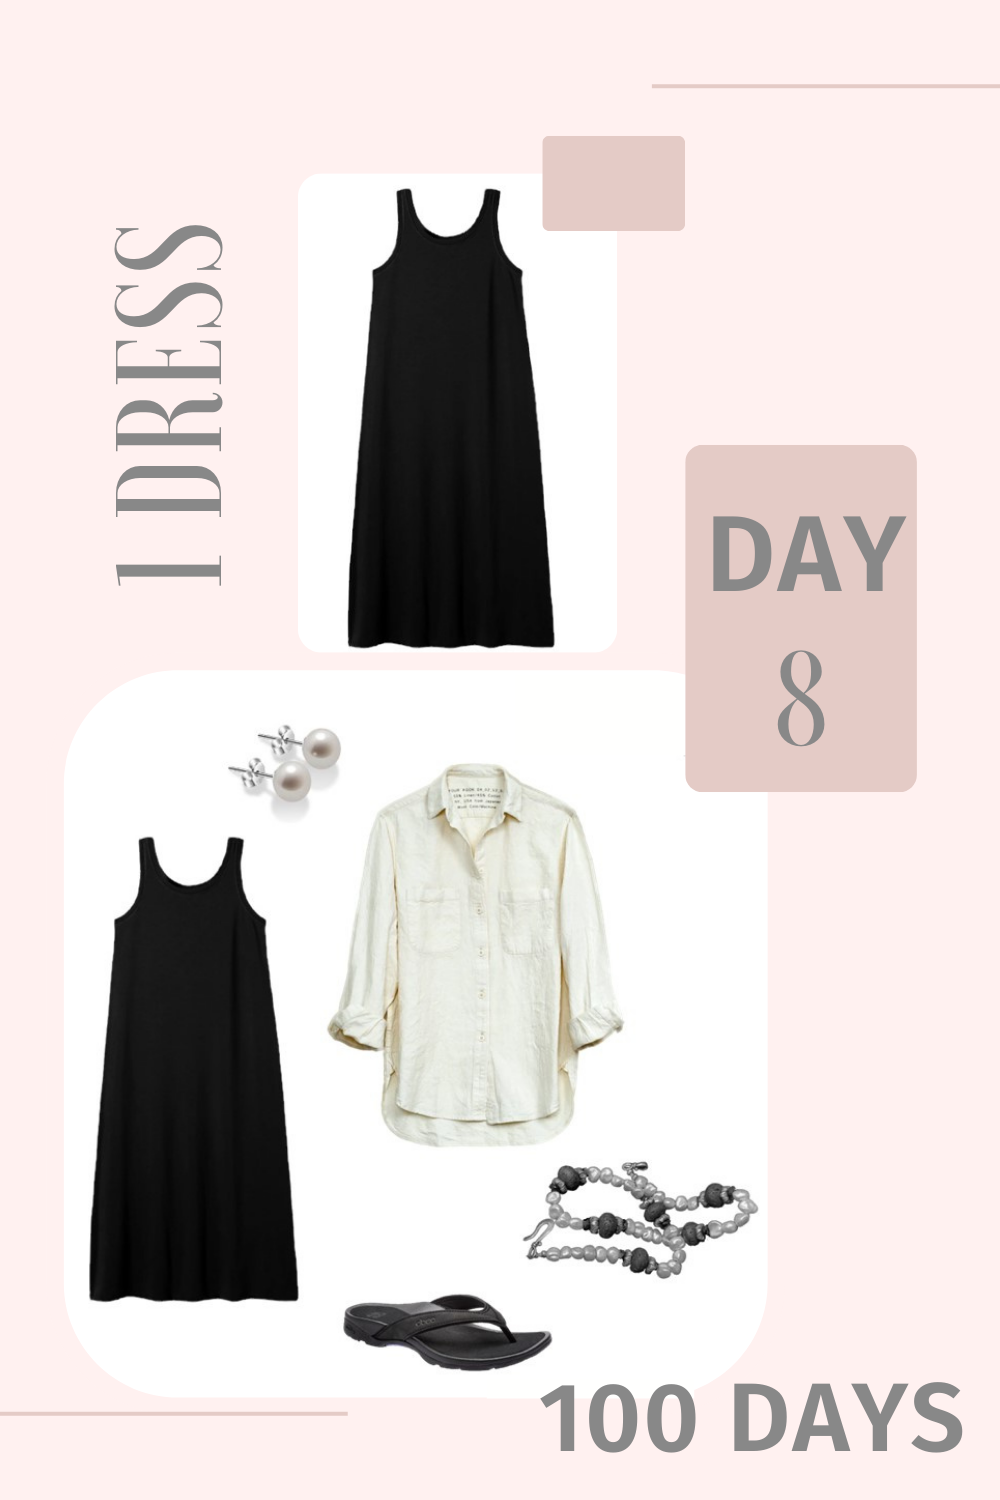 1 Dress 100 Days - Day 8